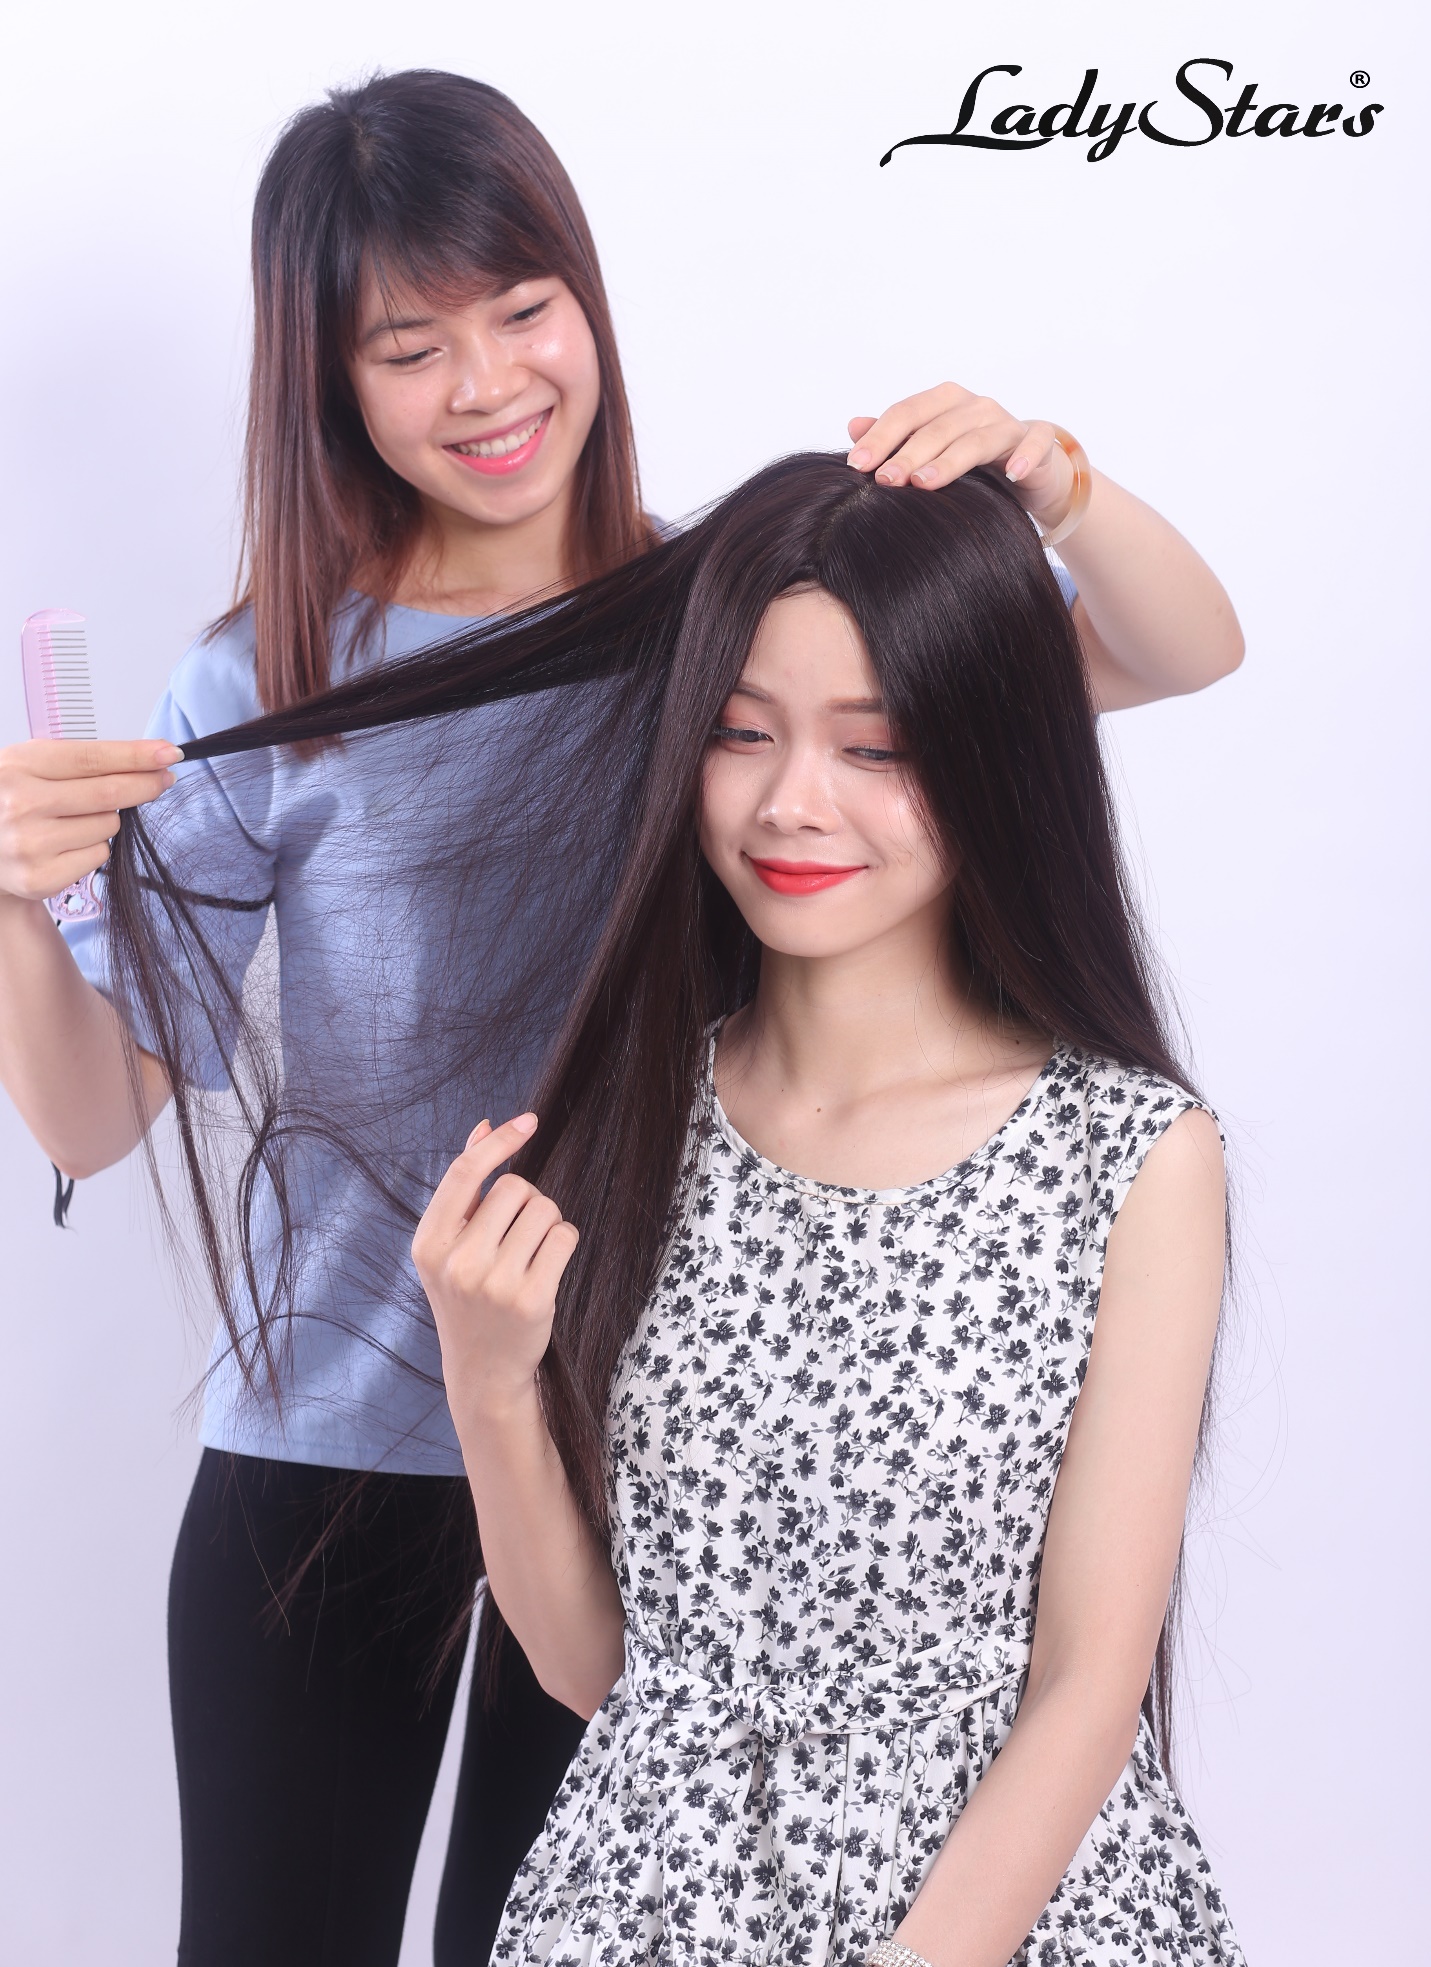 Tóc giả siêu da đầu - Xu hướng sử dụng tóc giả của những cô nàng phong cách - Ảnh 4.